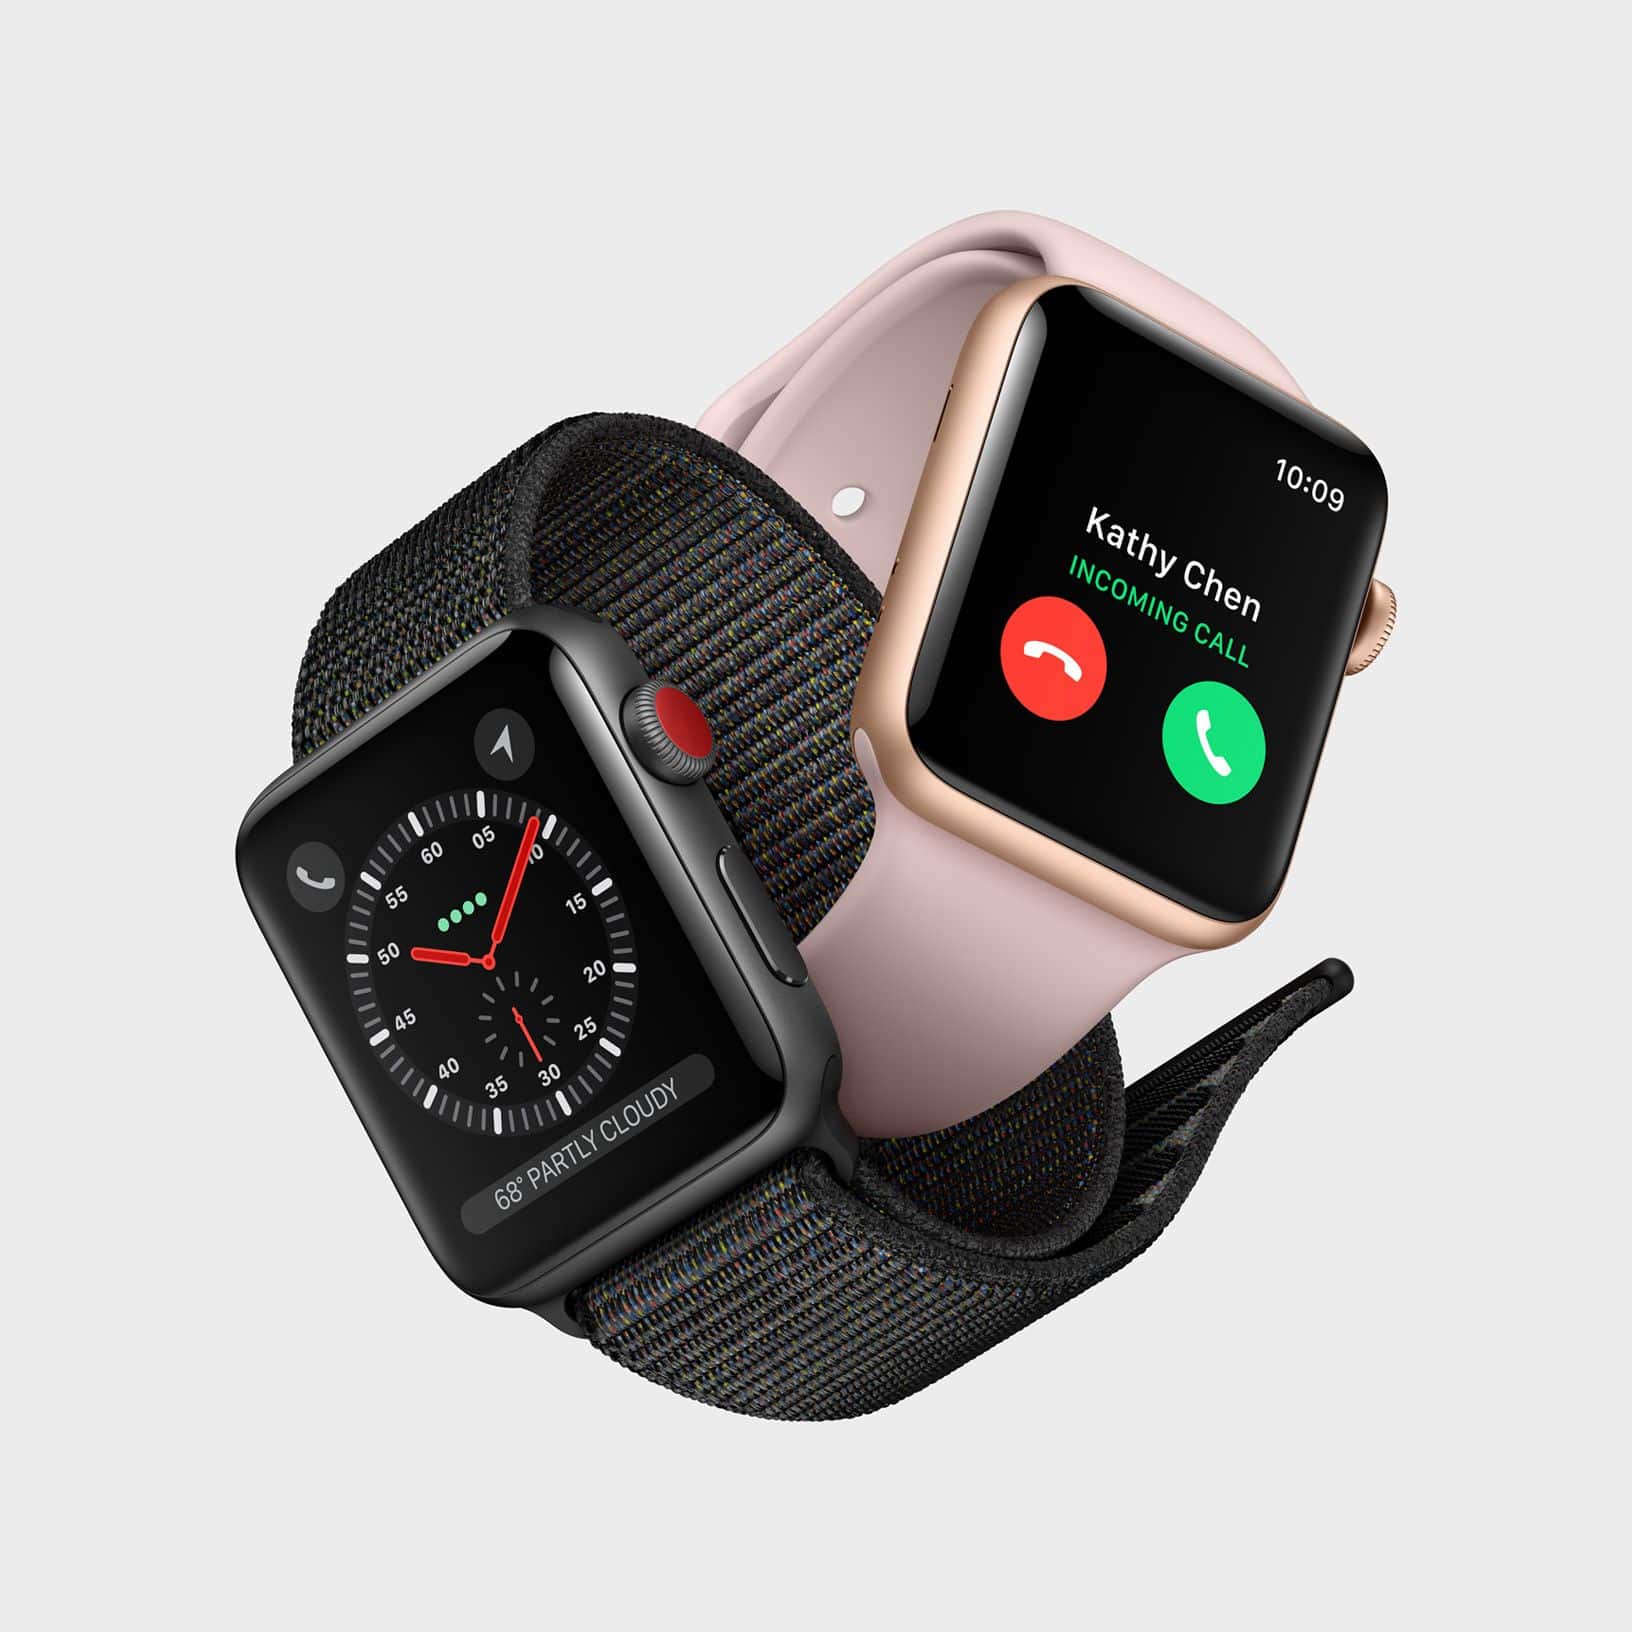 Apple Watch Series 3 Test: Erfahrungen – Wie gut ist die Sportuhr?